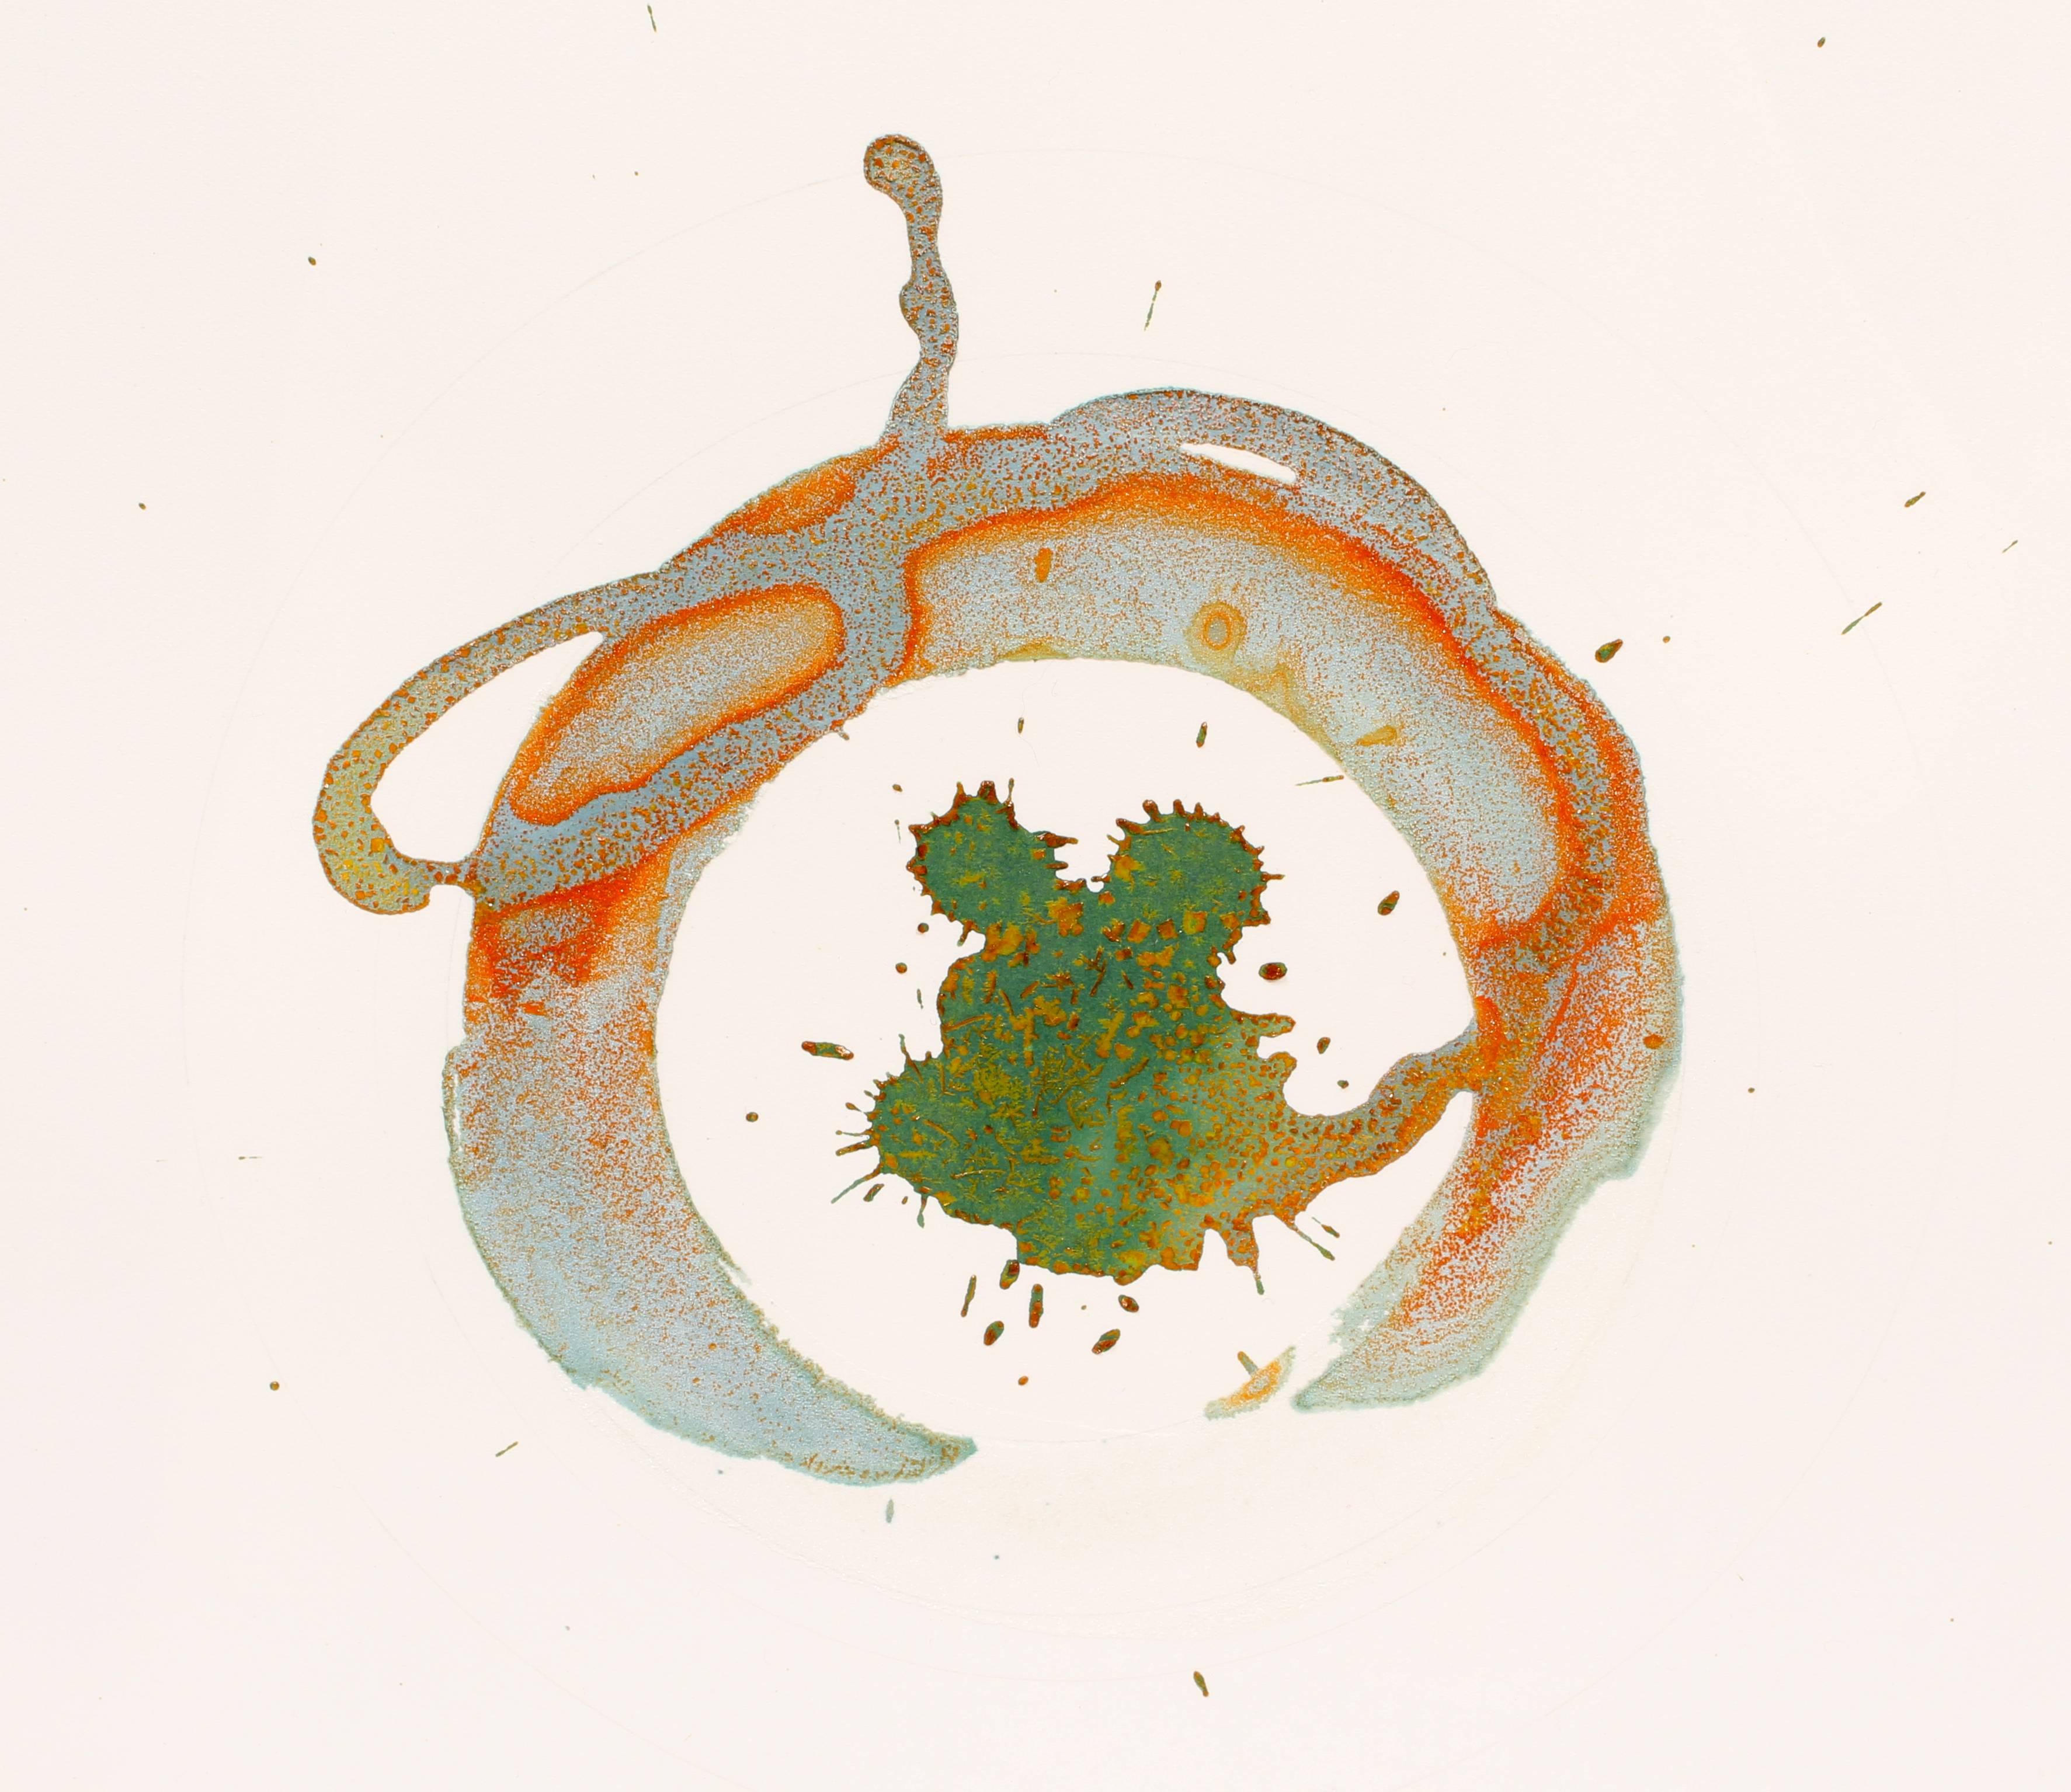 Ein originelles zeitgenössisches Mixed-Media-Werk des Konzeptkünstlers Jody Hanson.

Botanical, 2013, Kaliumhexacyanoferrat und Salz auf Papier, Format 16